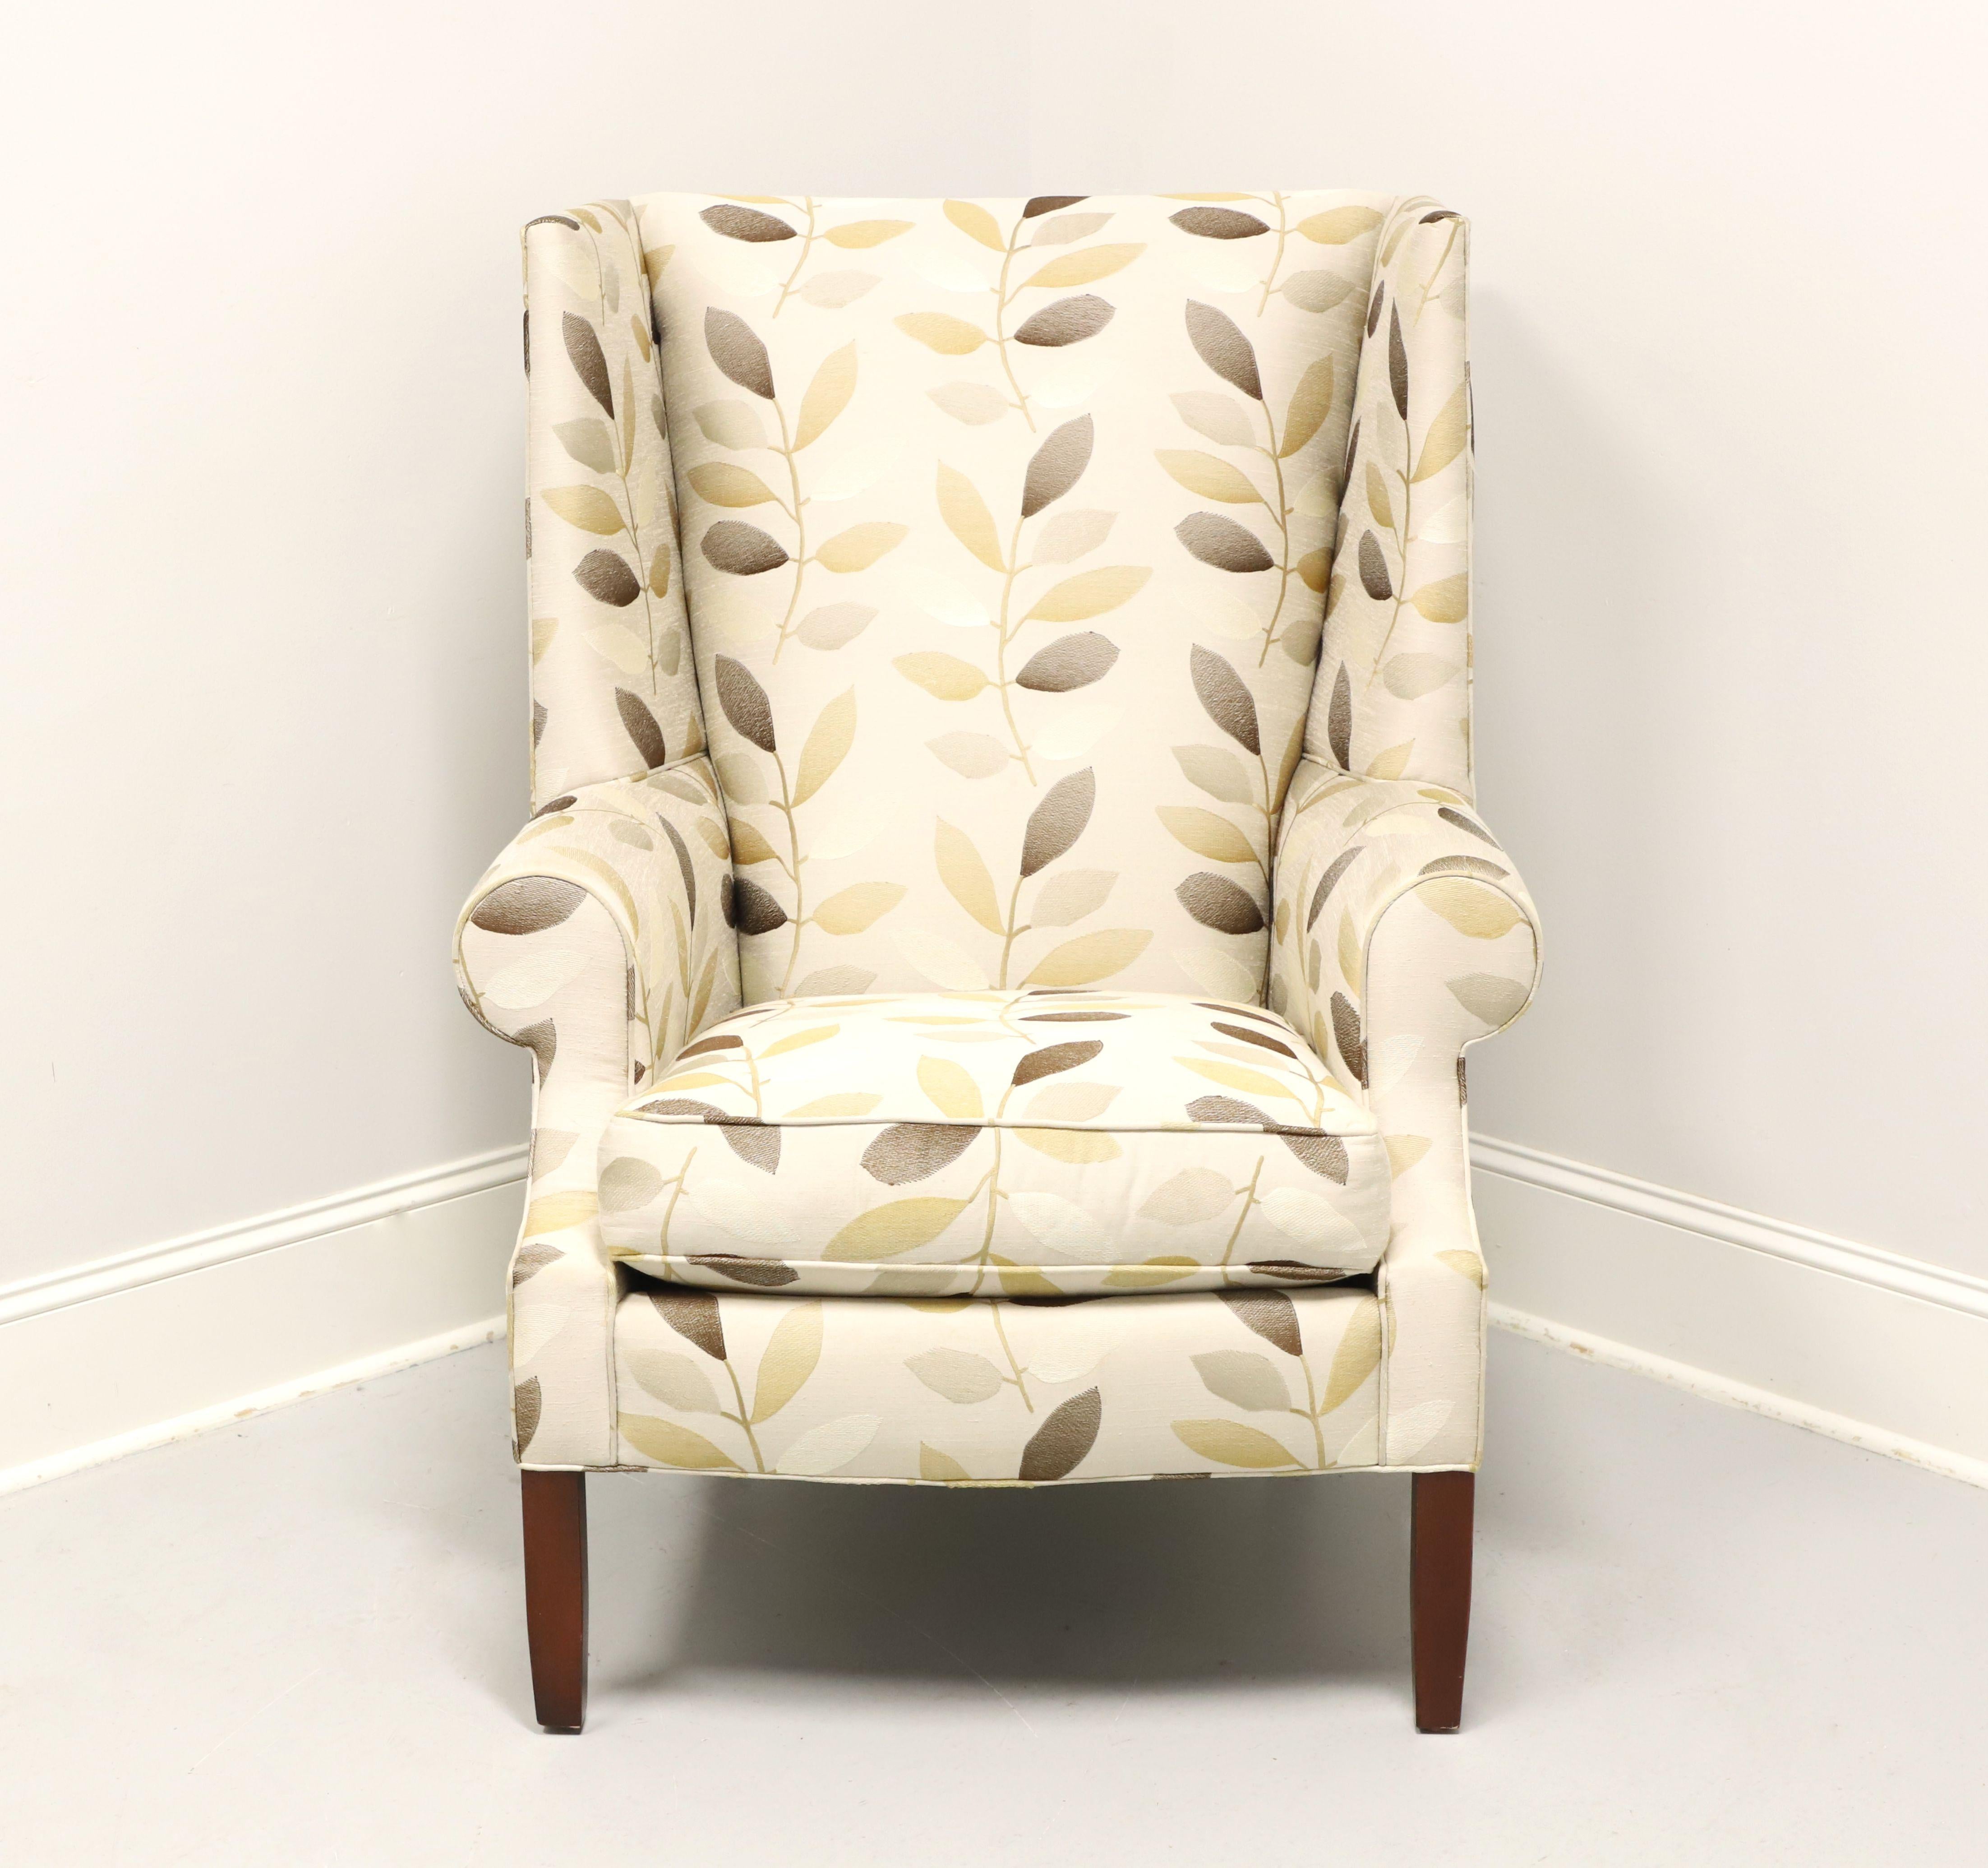 Chaise à dossier à oreilles de style transitionnel de Stickley Furniture, Park City. Le tissu est recouvert d'un motif de feuilles aux tons neutres sur une base beige. Les pieds avant droits et les pieds arrière évasés sont recouverts d'une finition